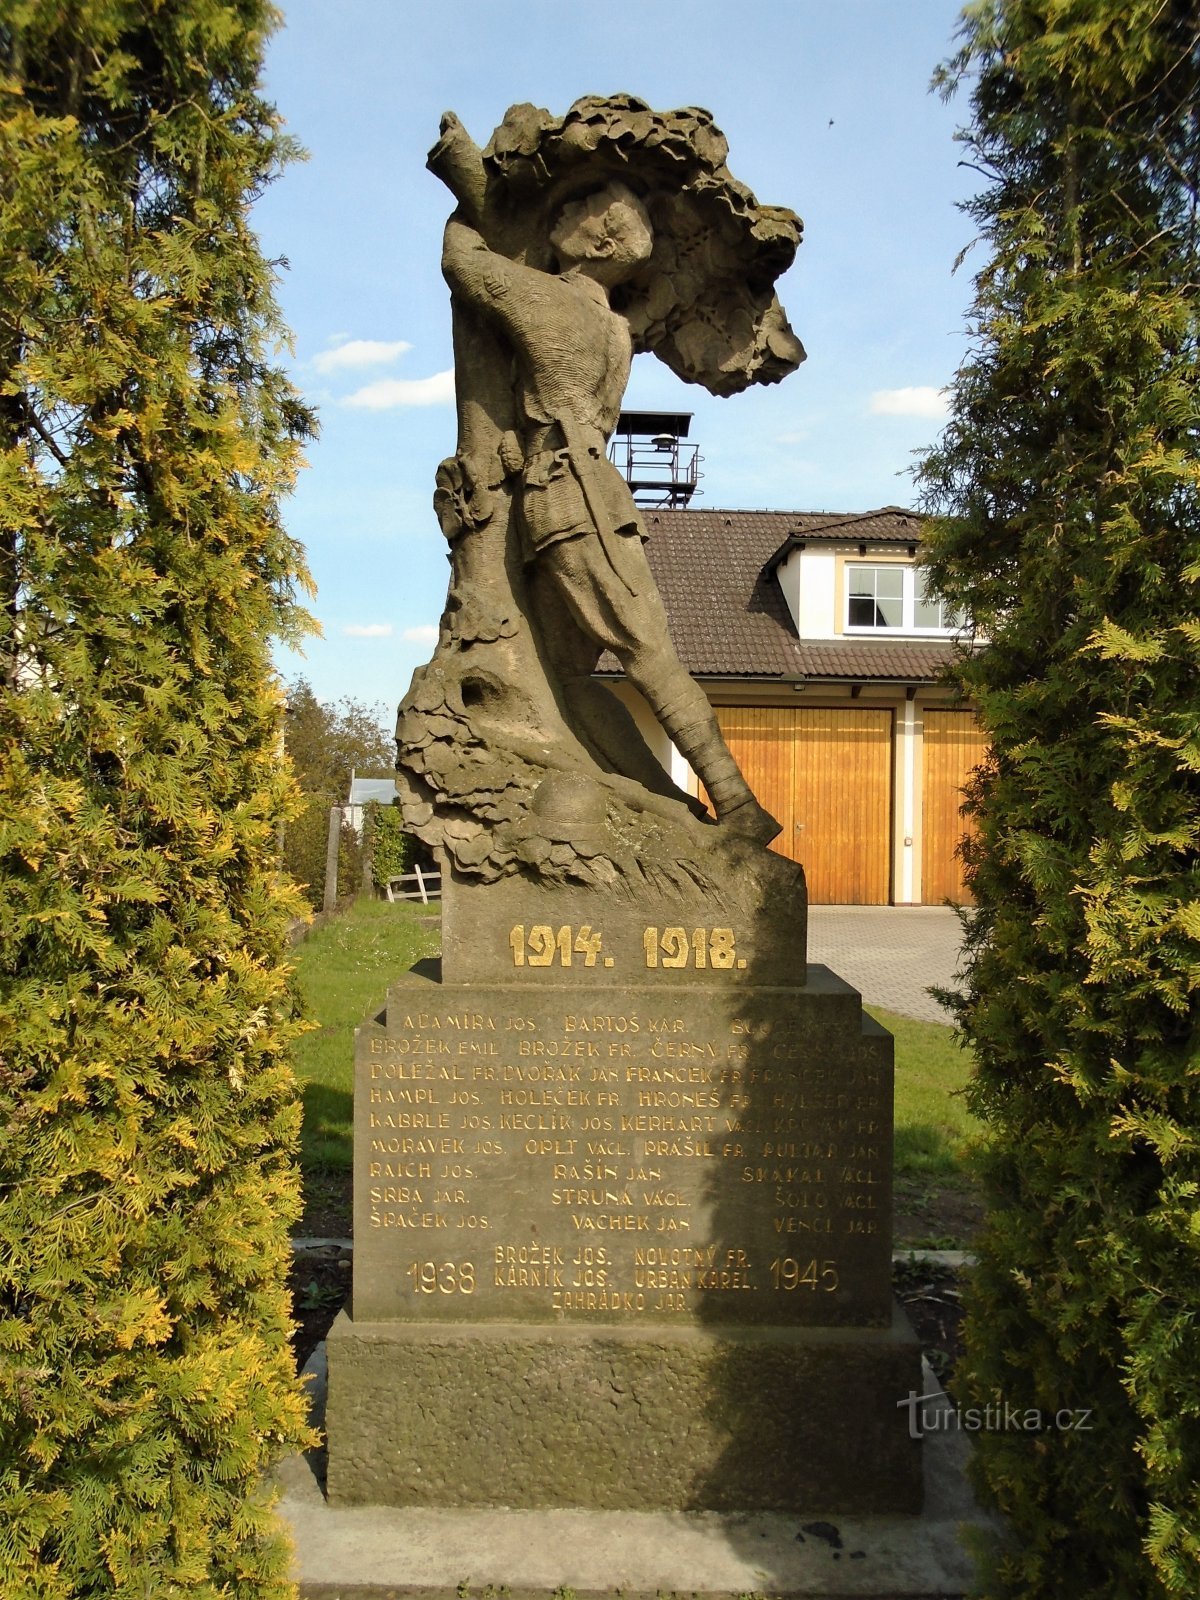 Đài tưởng niệm những người đã chết trong Thế chiến I (Předměřice nad Labem)